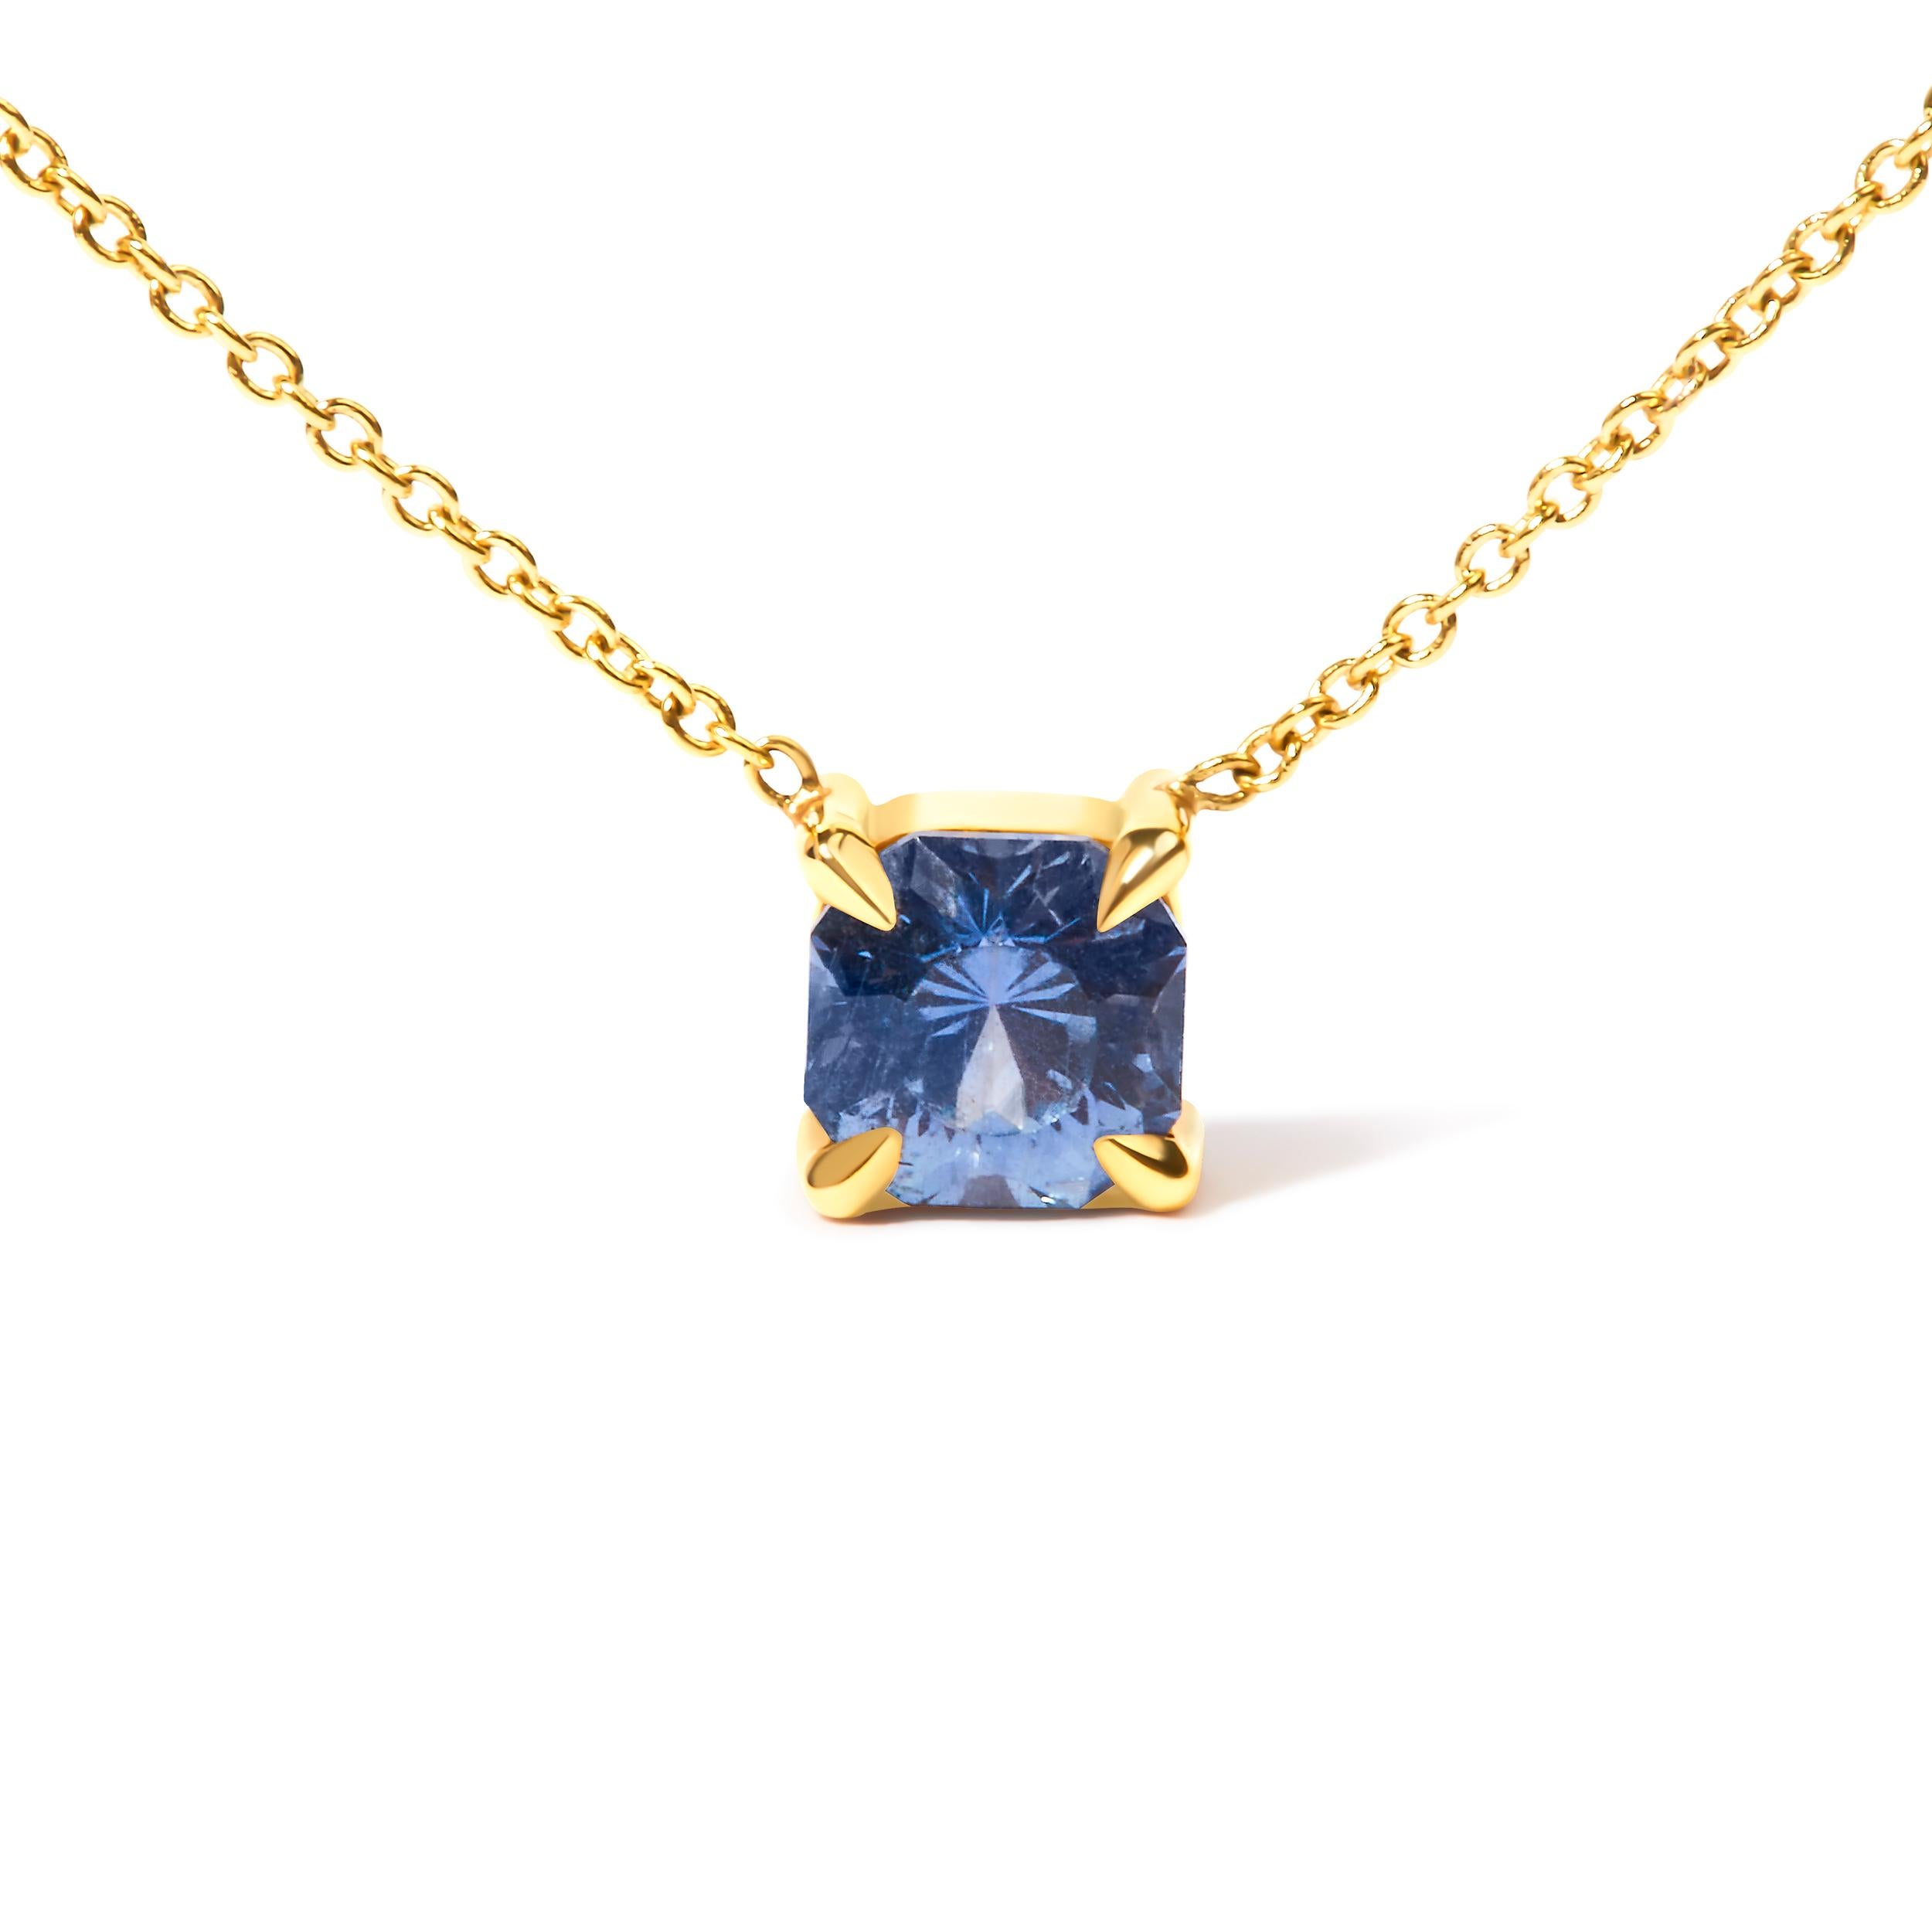 Tauchen Sie ein in die zauberhafte Anziehungskraft unserer 14K Gelbgold 4/5 Cttw Natural Cushion Cut Blue Sapphire Solitaire Pendant Necklace. Diese mit exquisiter Handwerkskunst und Liebe zum Detail gefertigte Halskette besticht durch einen 4,8 x